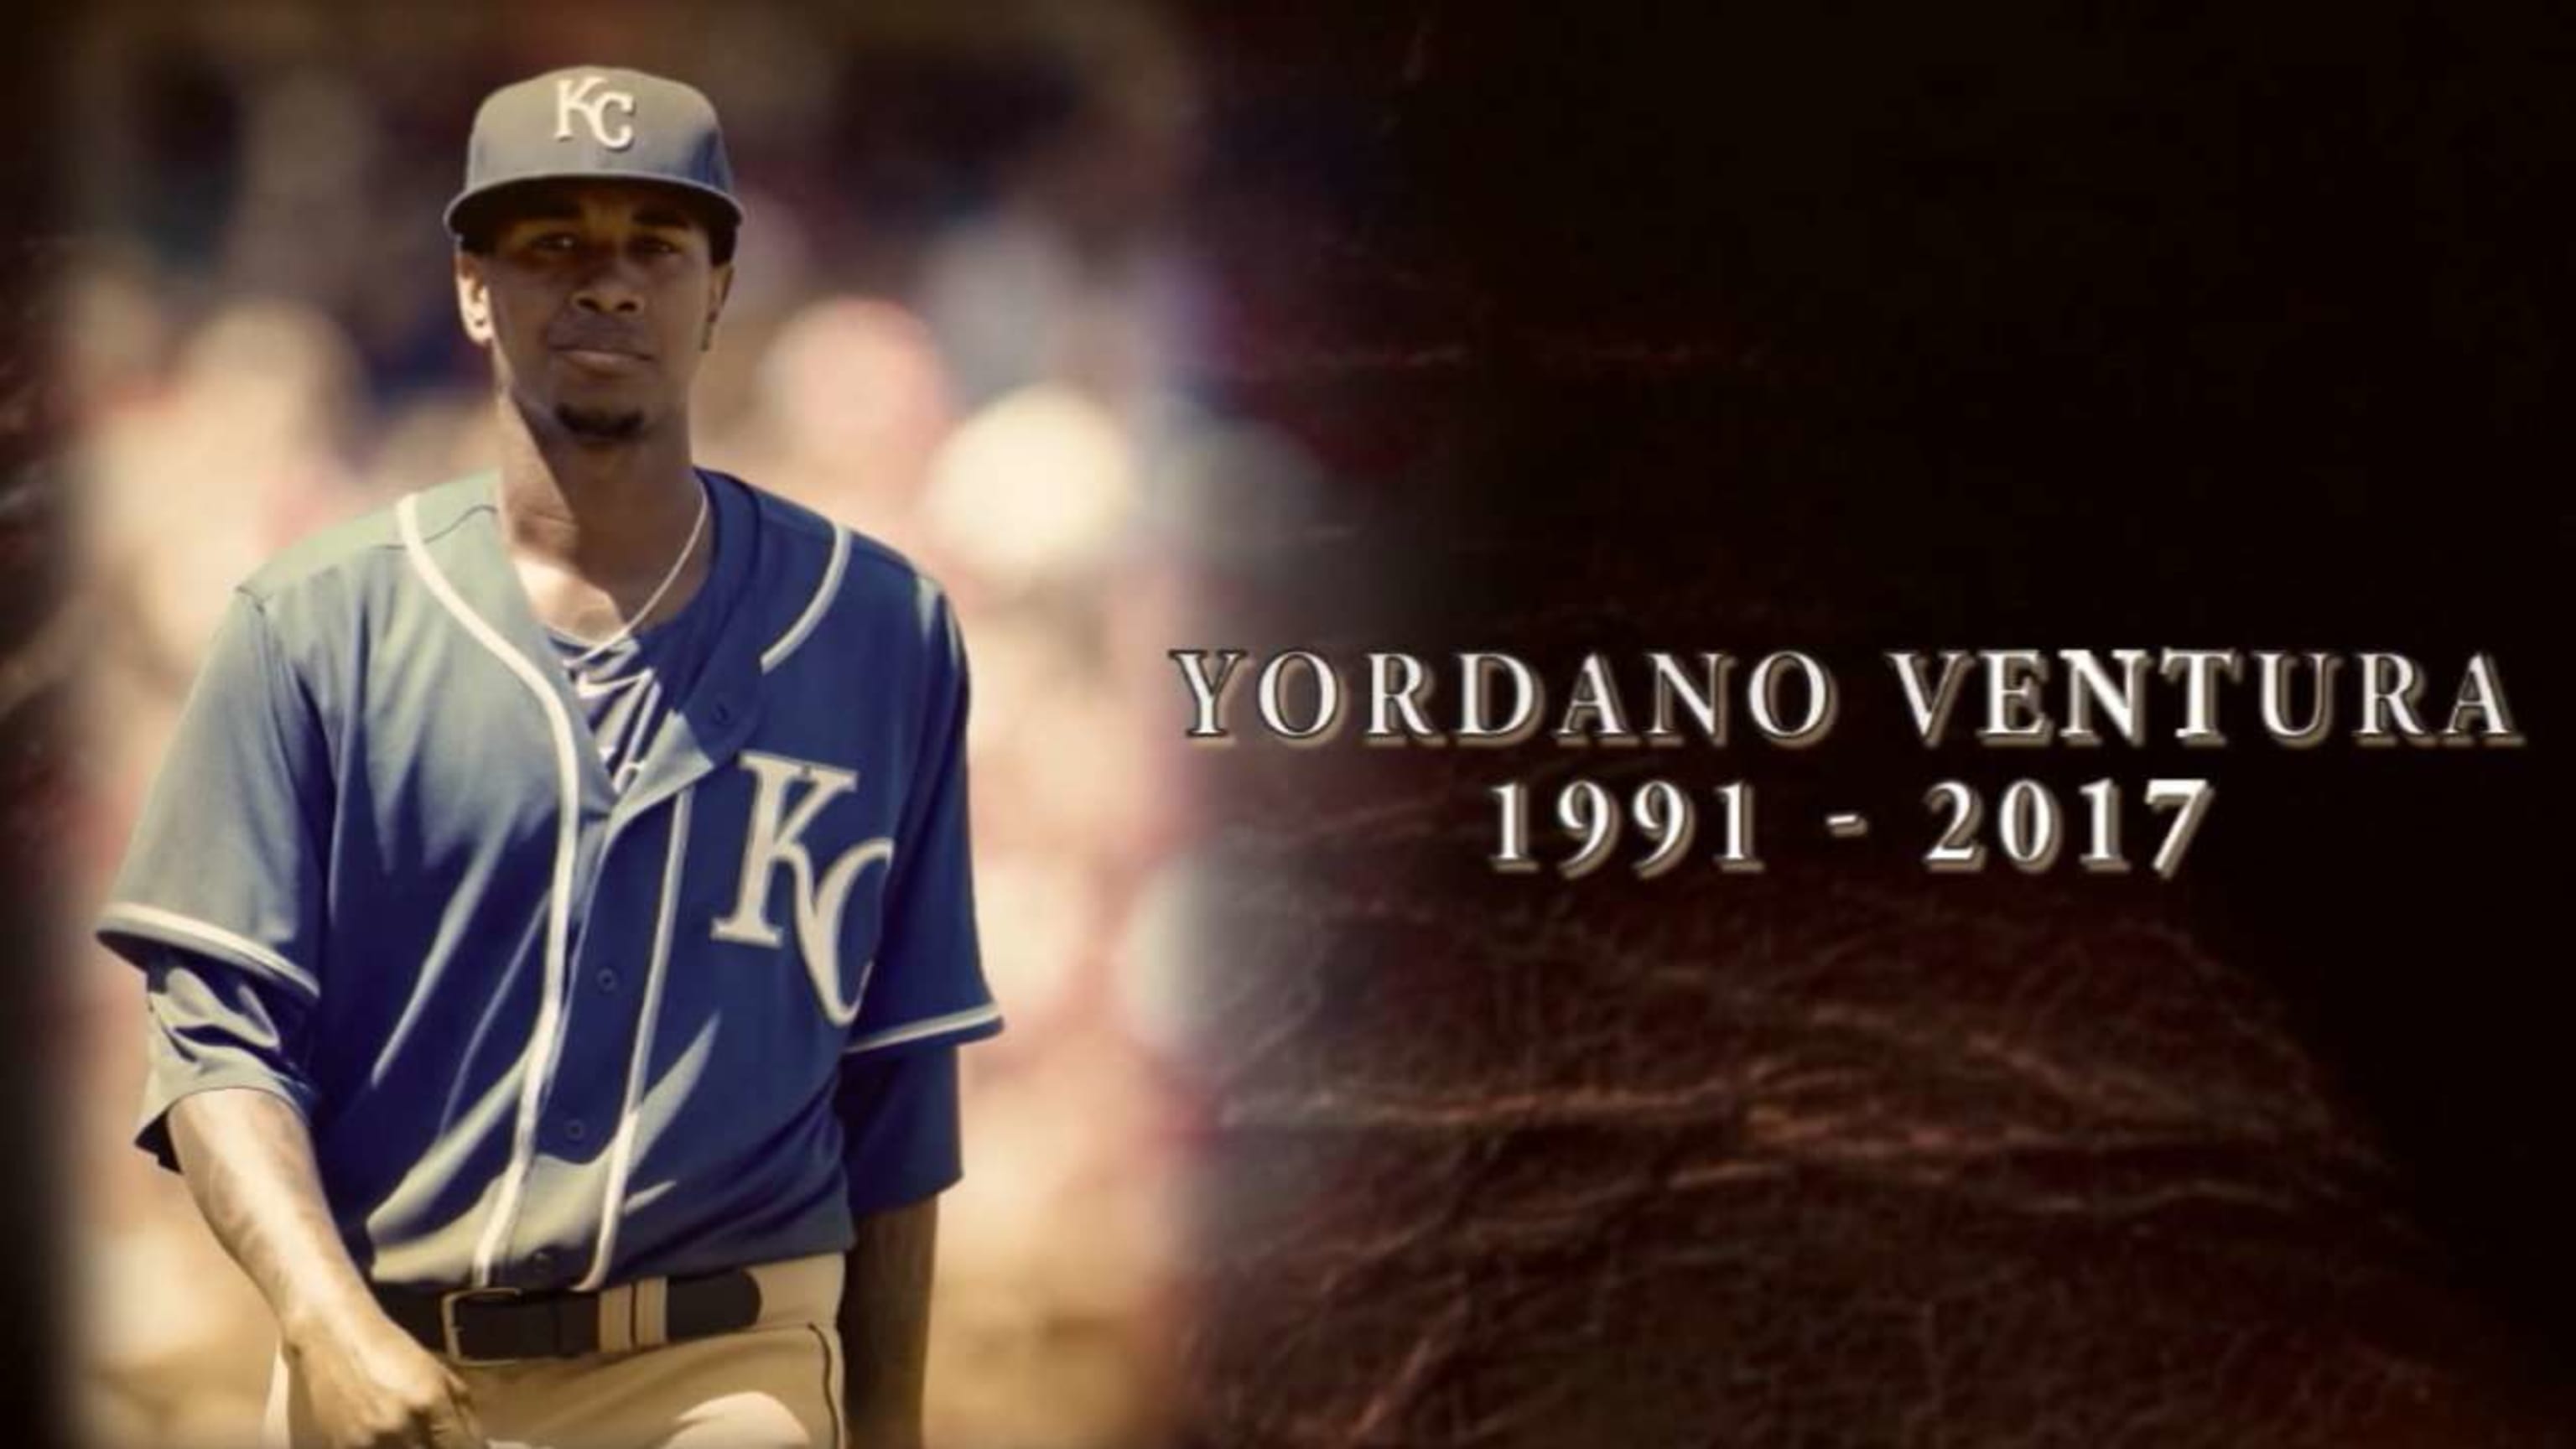 63 Ace Yordano Ventura RIP ideas  kansas city royals baseball, ventura,  royals baseball